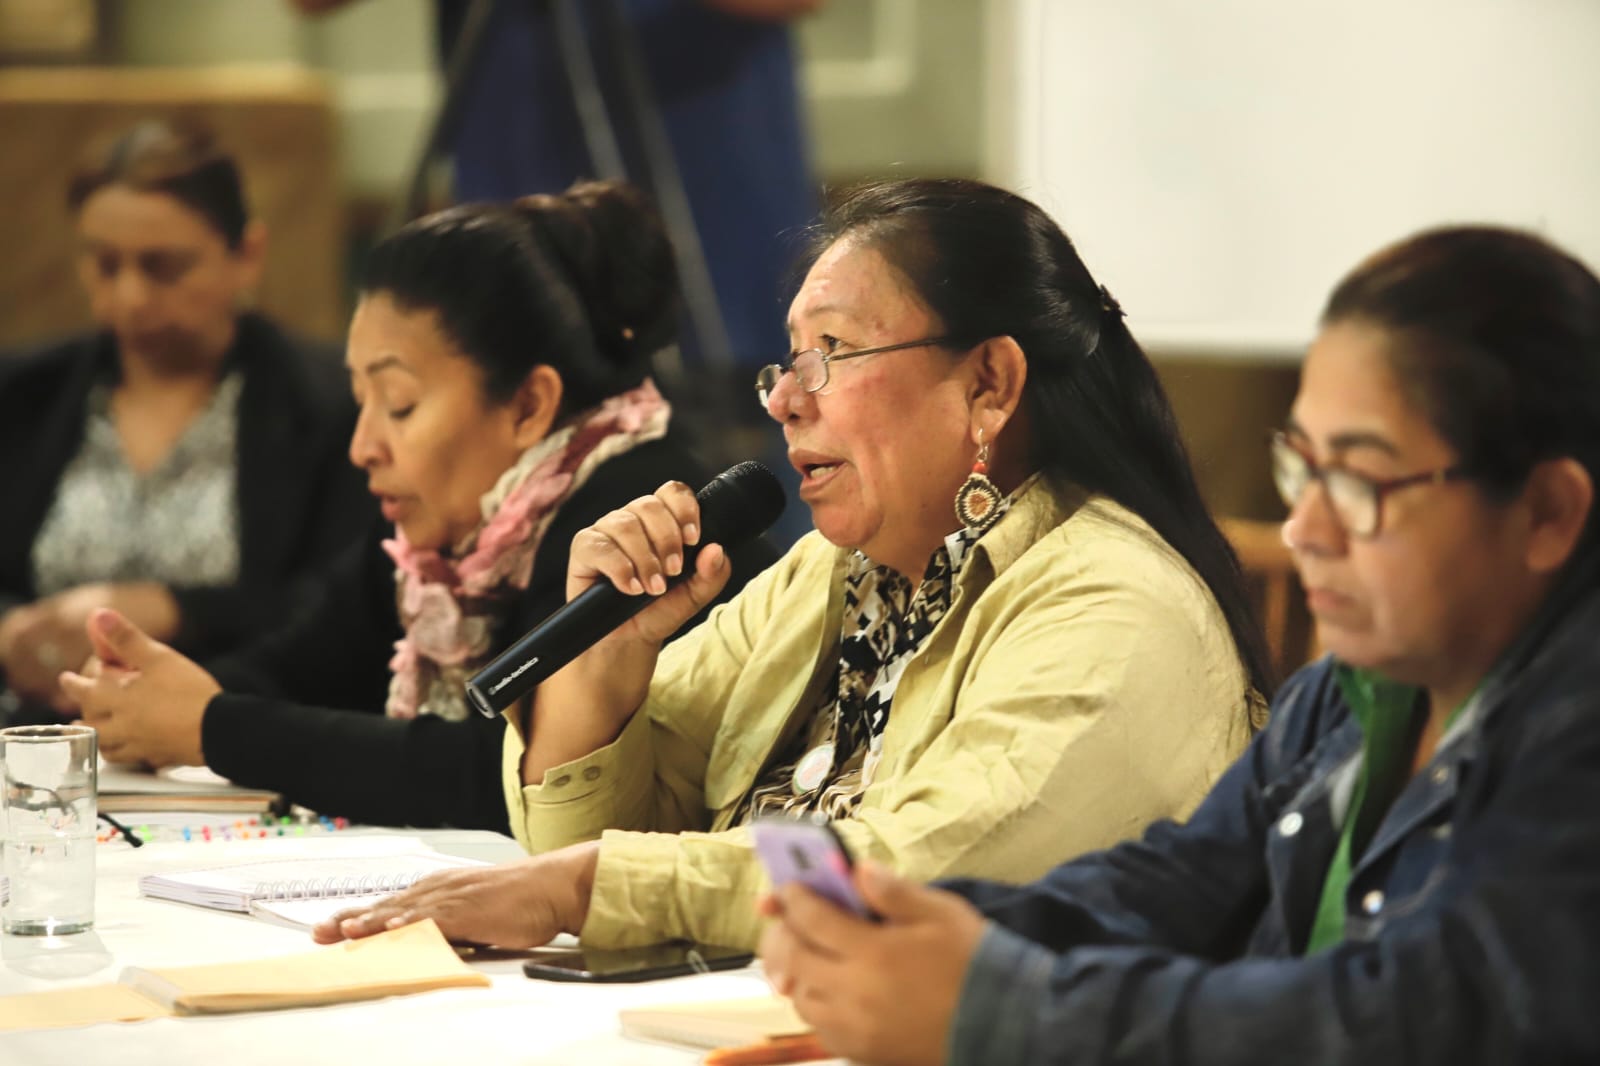 Mujeres indígenas vuelven público el debate sobre la violencia y proponen soluciones 